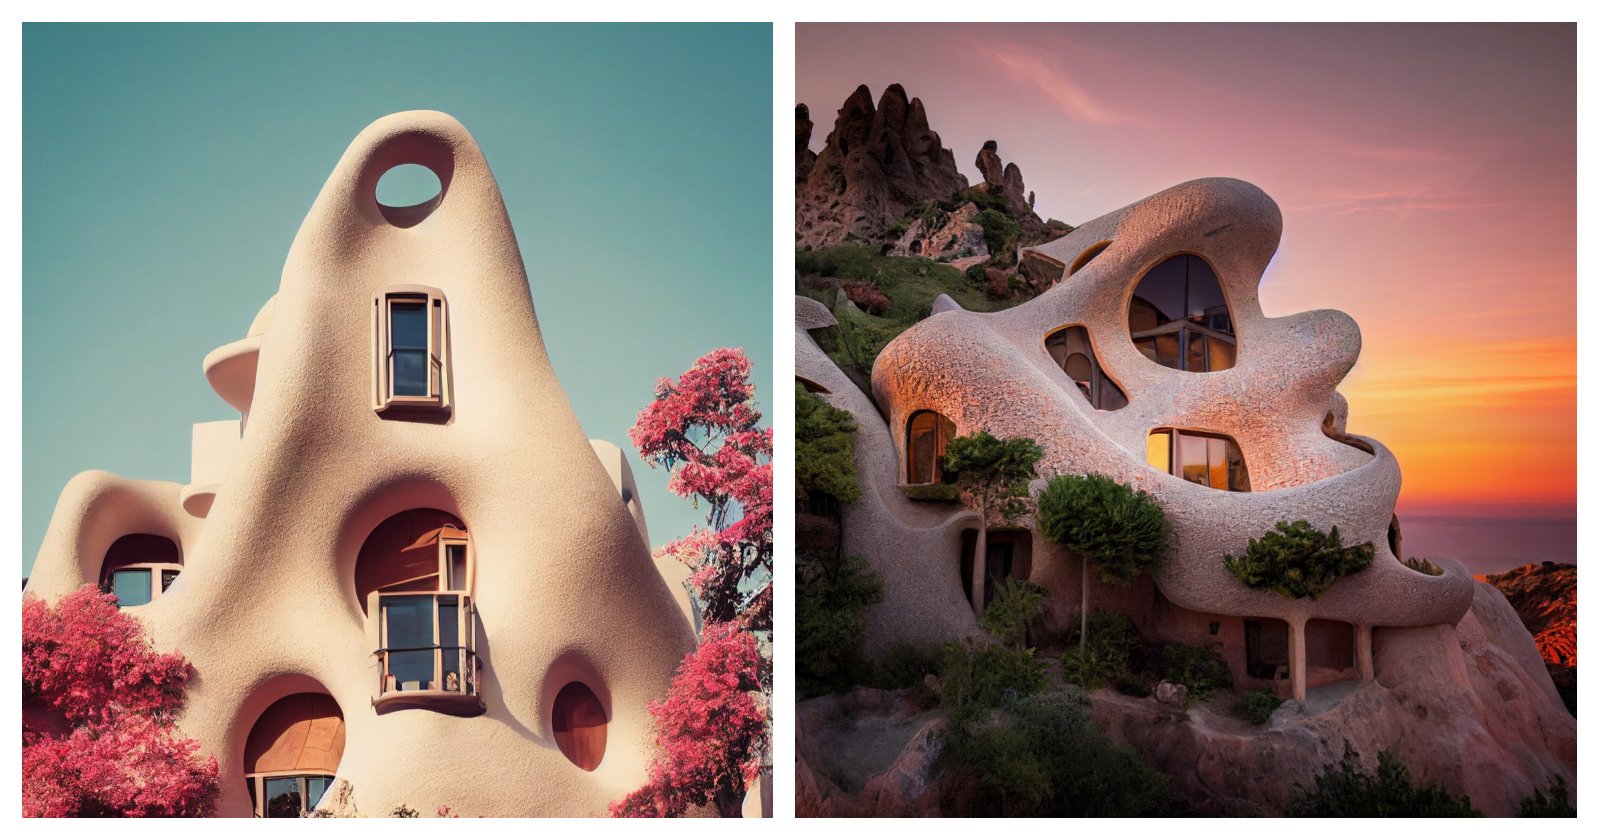 Gaudism — from Gaudí, el proyecto que nos acerca al universo de Gaudí gracias a la Inteligencia Artificial